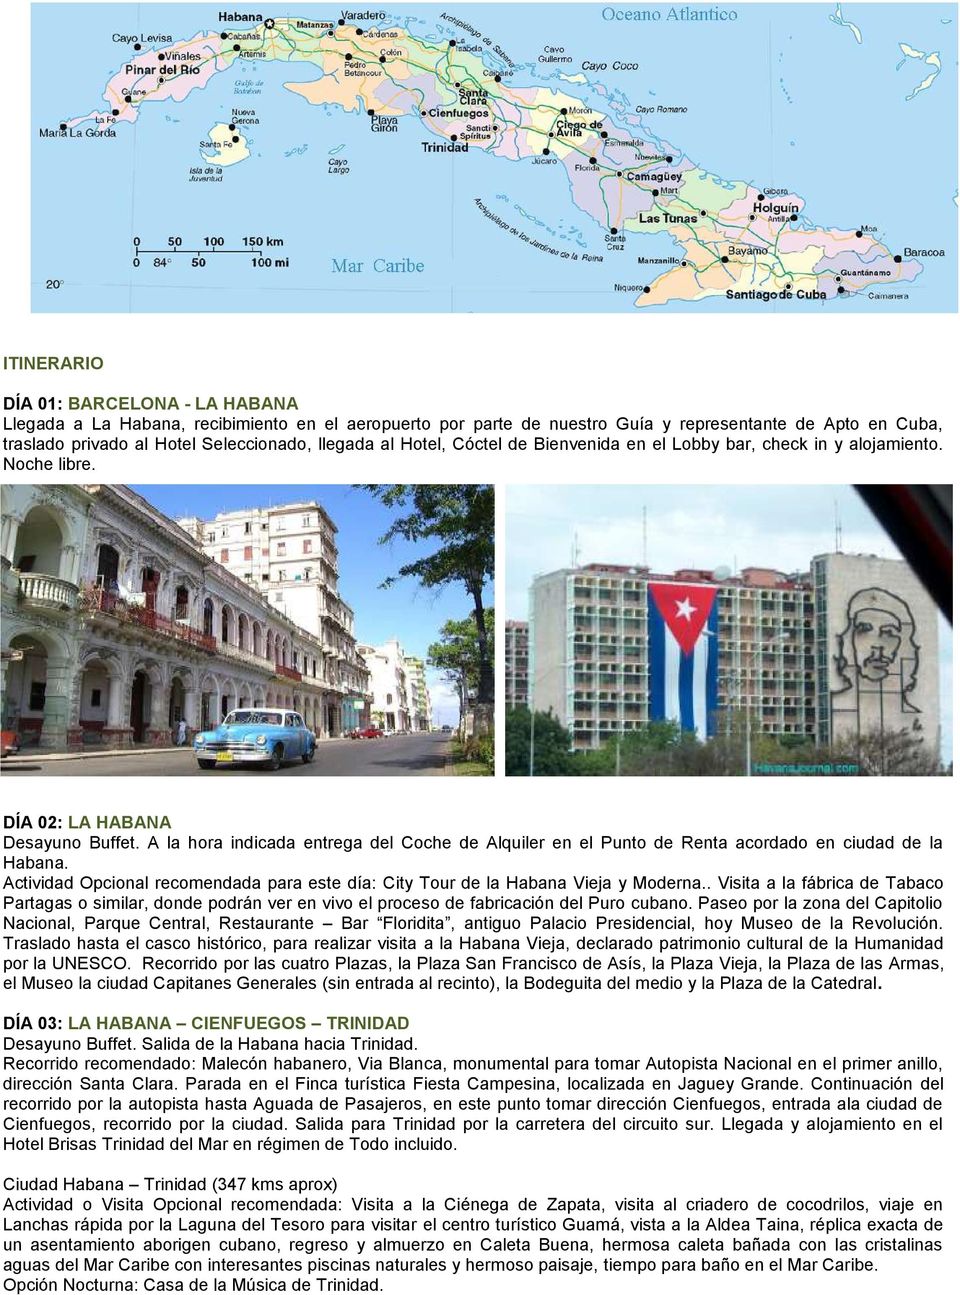 A la hora indicada entrega del Coche de Alquiler en el Punto de Renta acordado en ciudad de la Habana. Actividad Opcional recomendada para este día: City Tour de la Habana Vieja y Moderna.